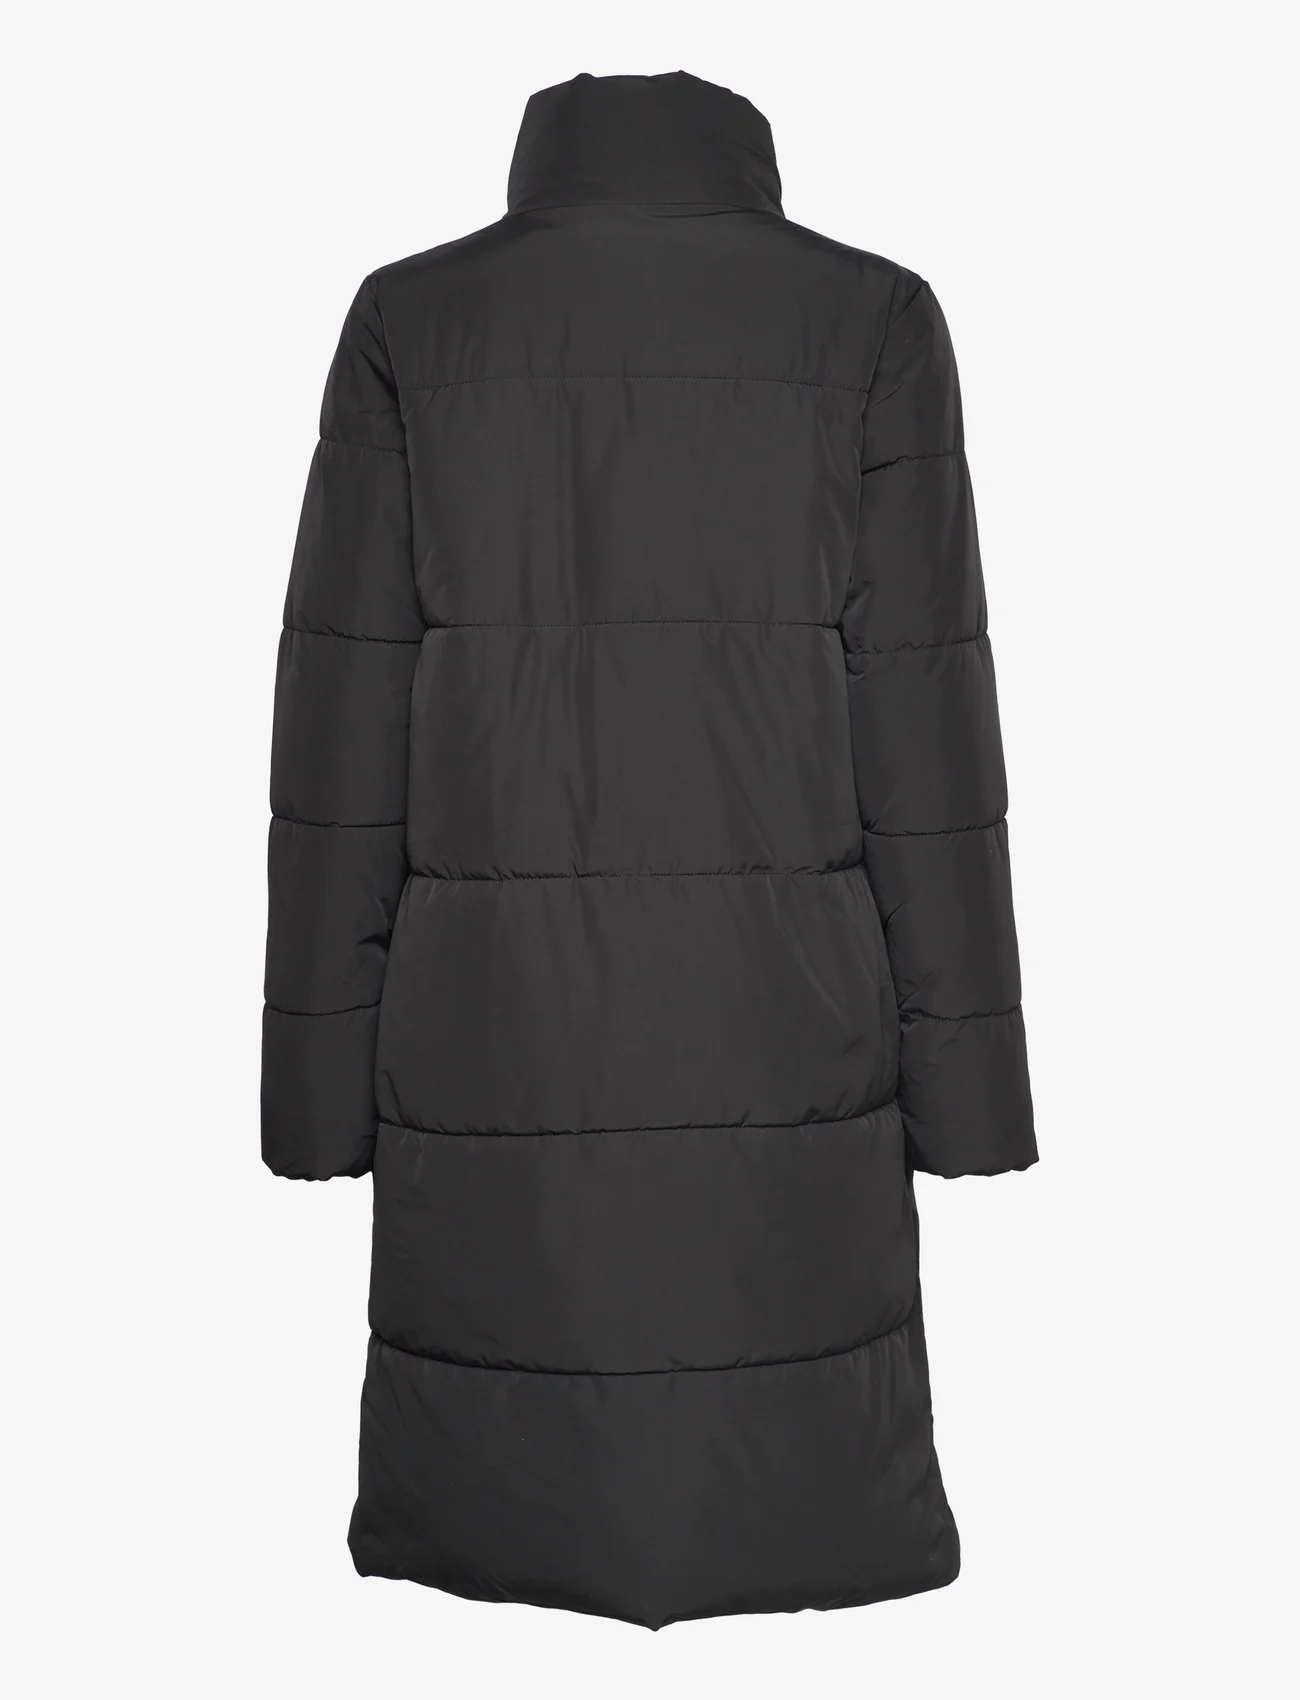 Jacqueline de Yong - JDYERIN LONG JACKET OTW LO - winter jackets - black - 1